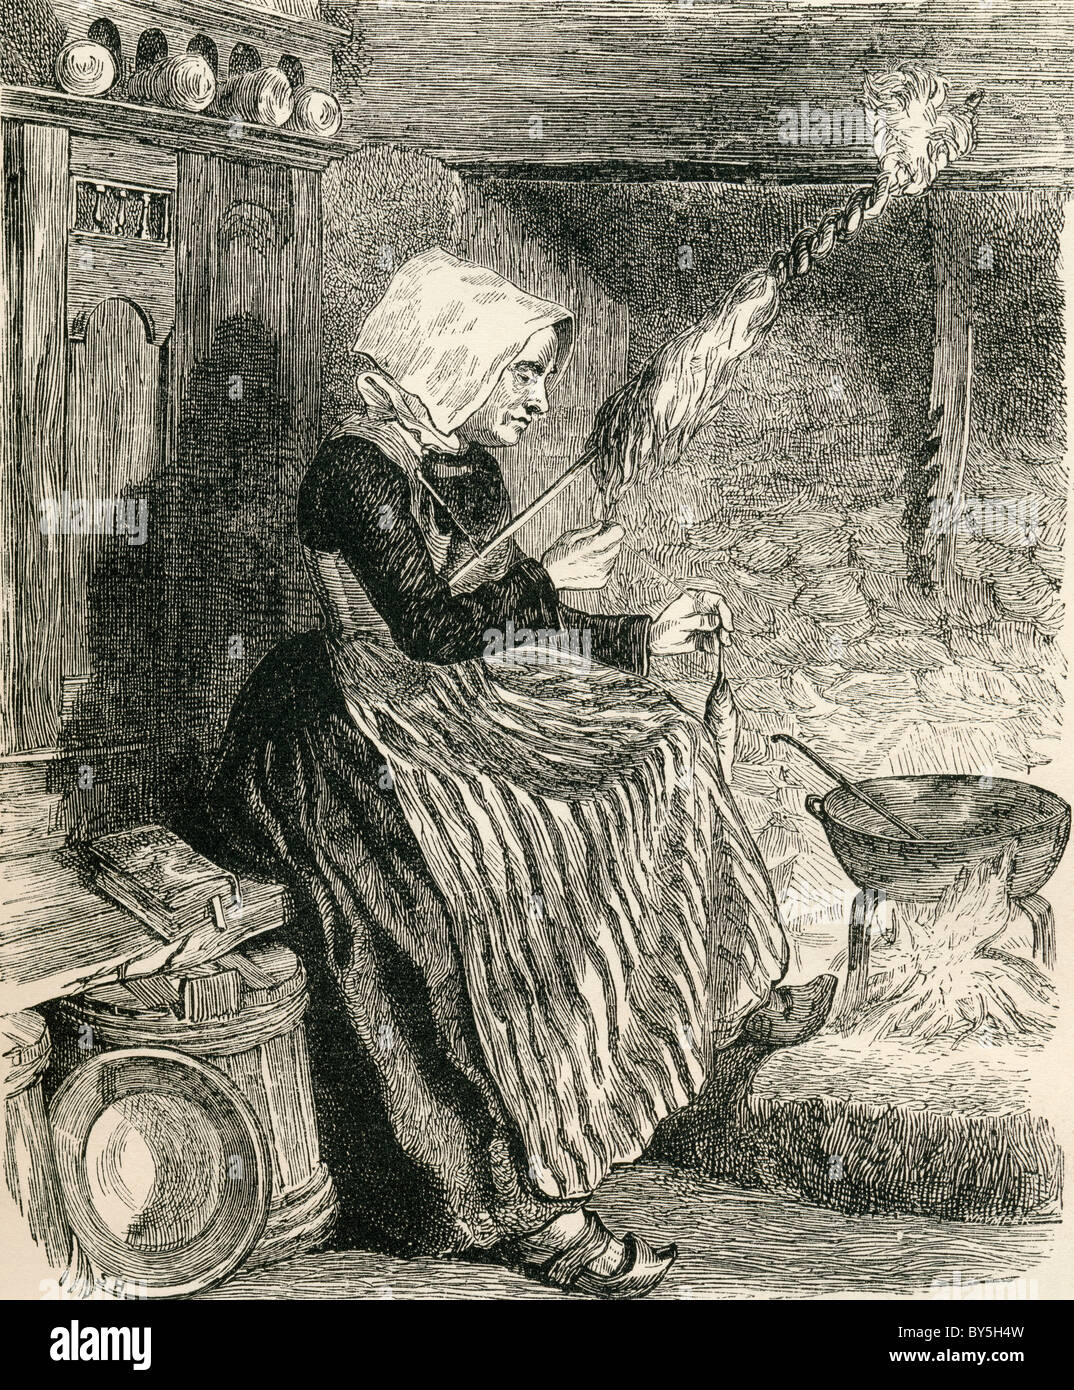 Eine bretonische Bäuerin im the19th Jahrhundert Wolle spinnen. Von Französisch Bilder von The Reverend Samuel G. Green veröffentlichte 1878. Stockfoto